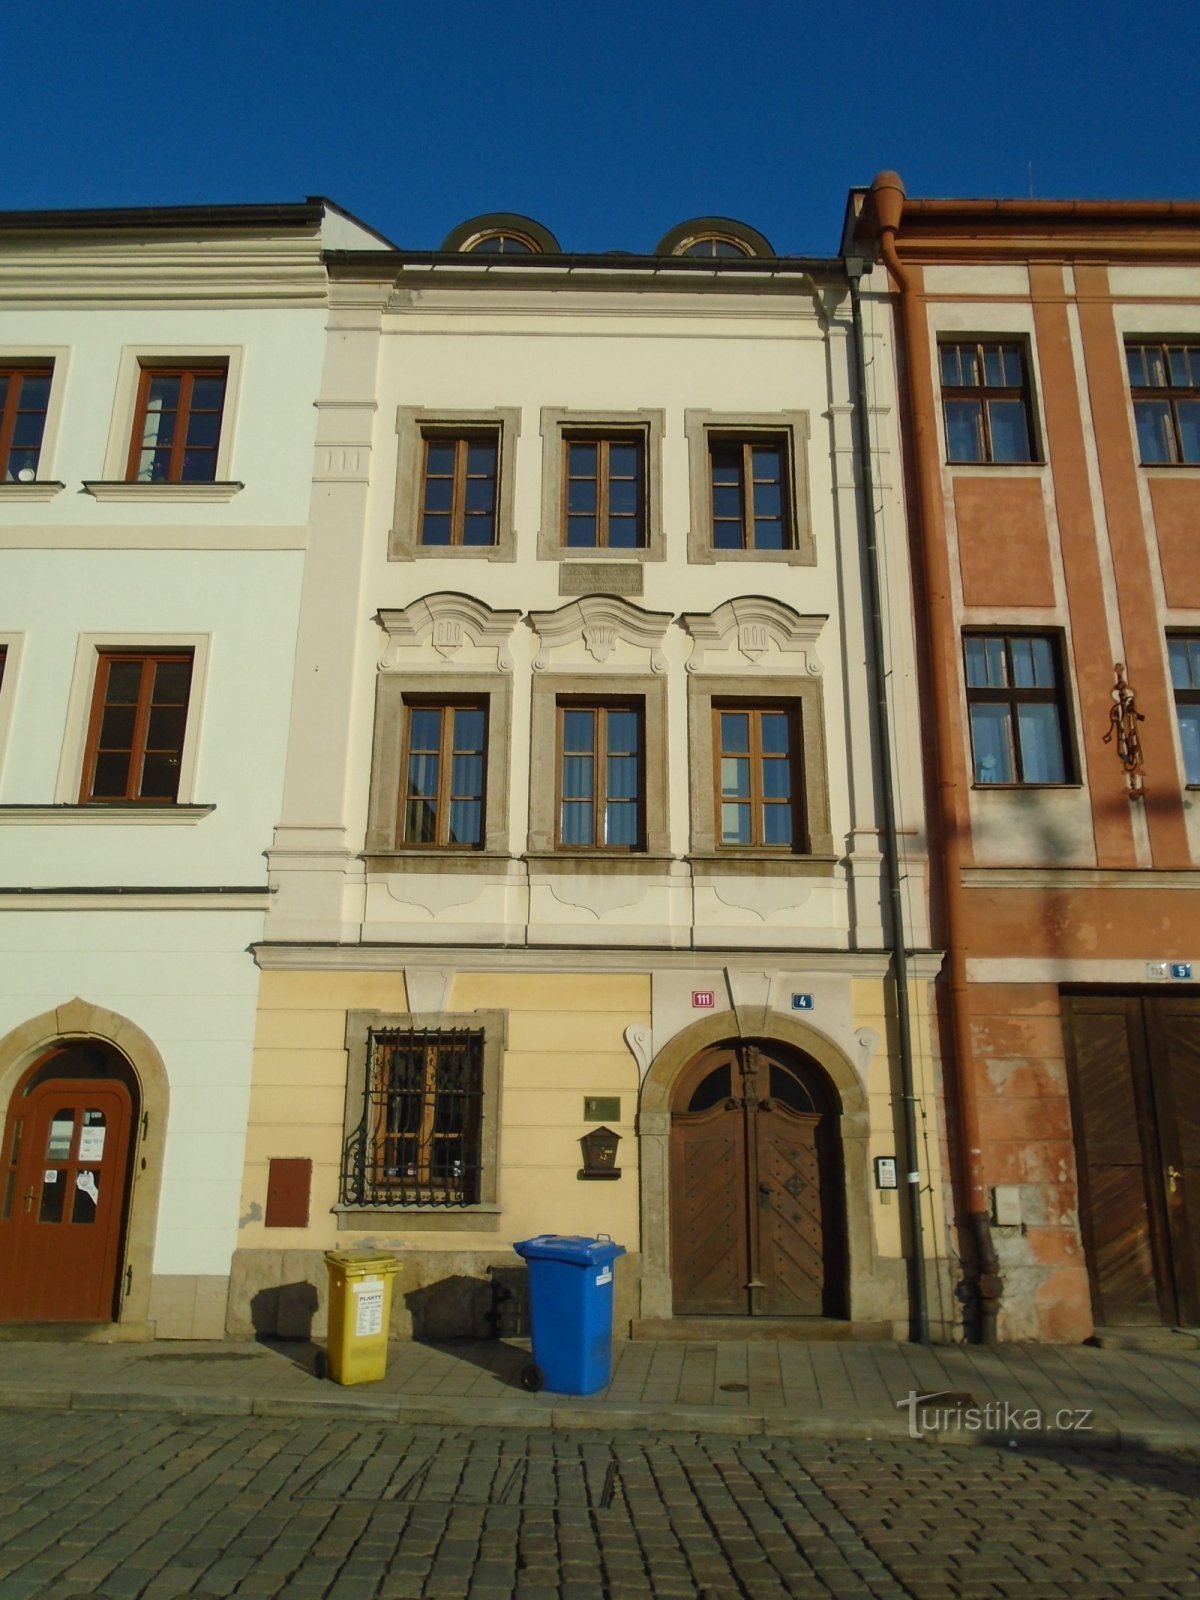 Malé náměstí nr 111 (Hradec Králové, 30.1.2019 april XNUMX)